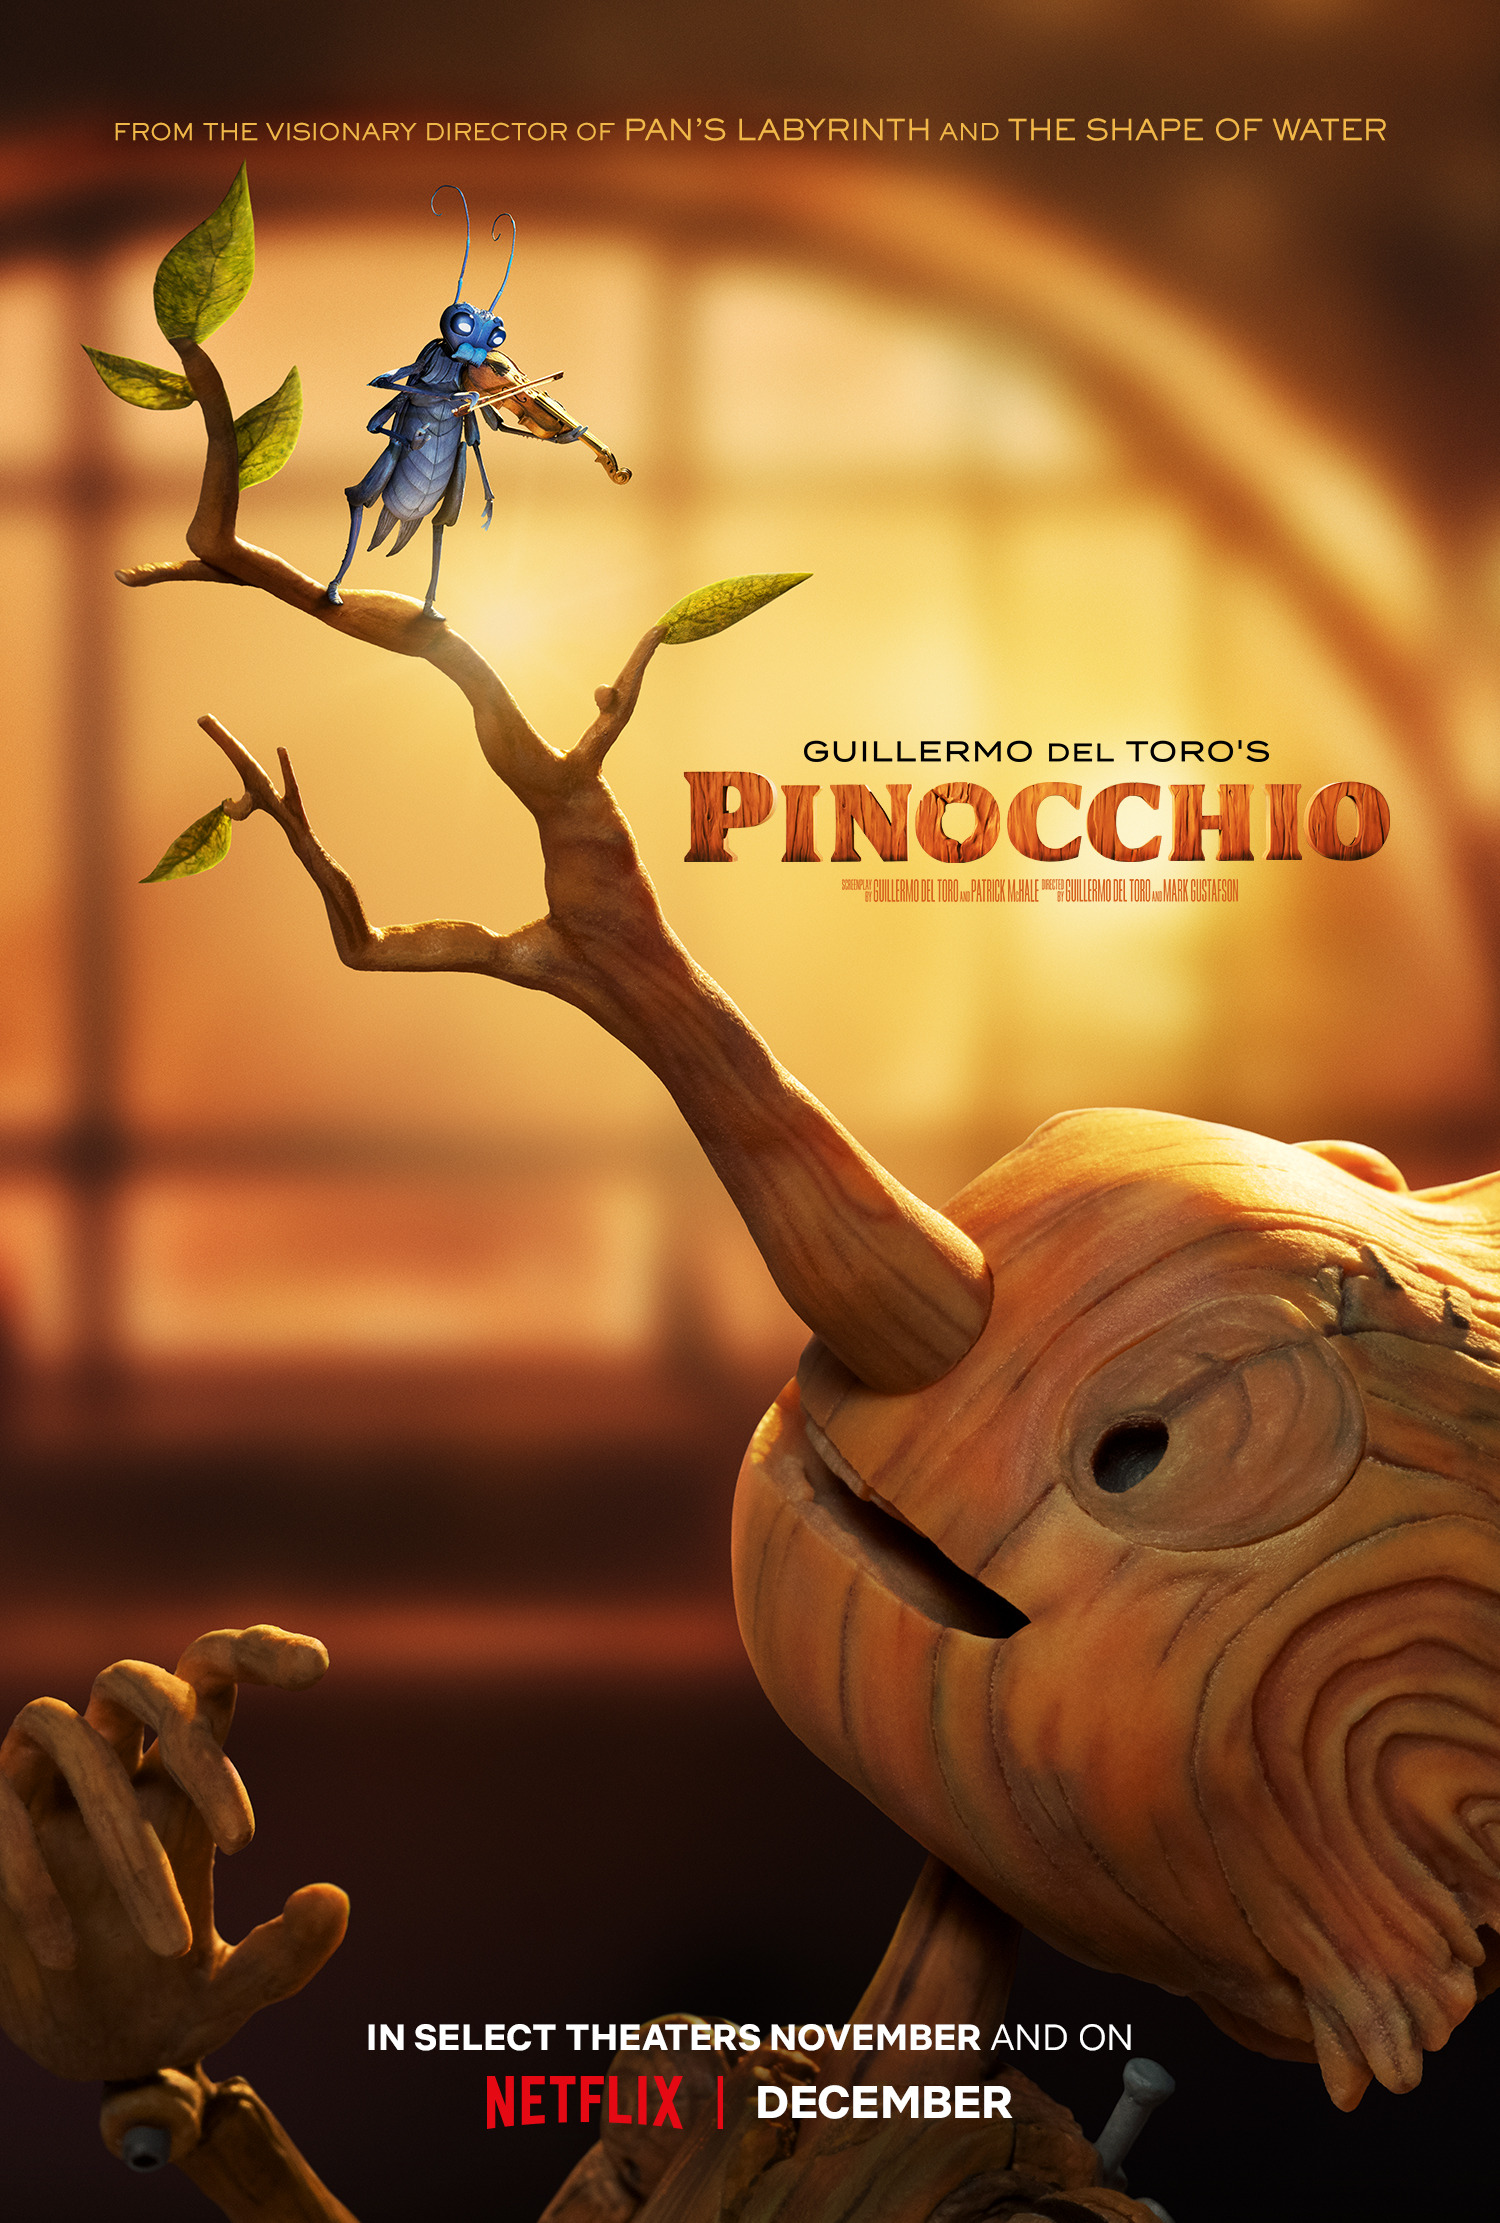 Mega Sized Movie Poster Image for Guillermo del Toro's Pinocchio 